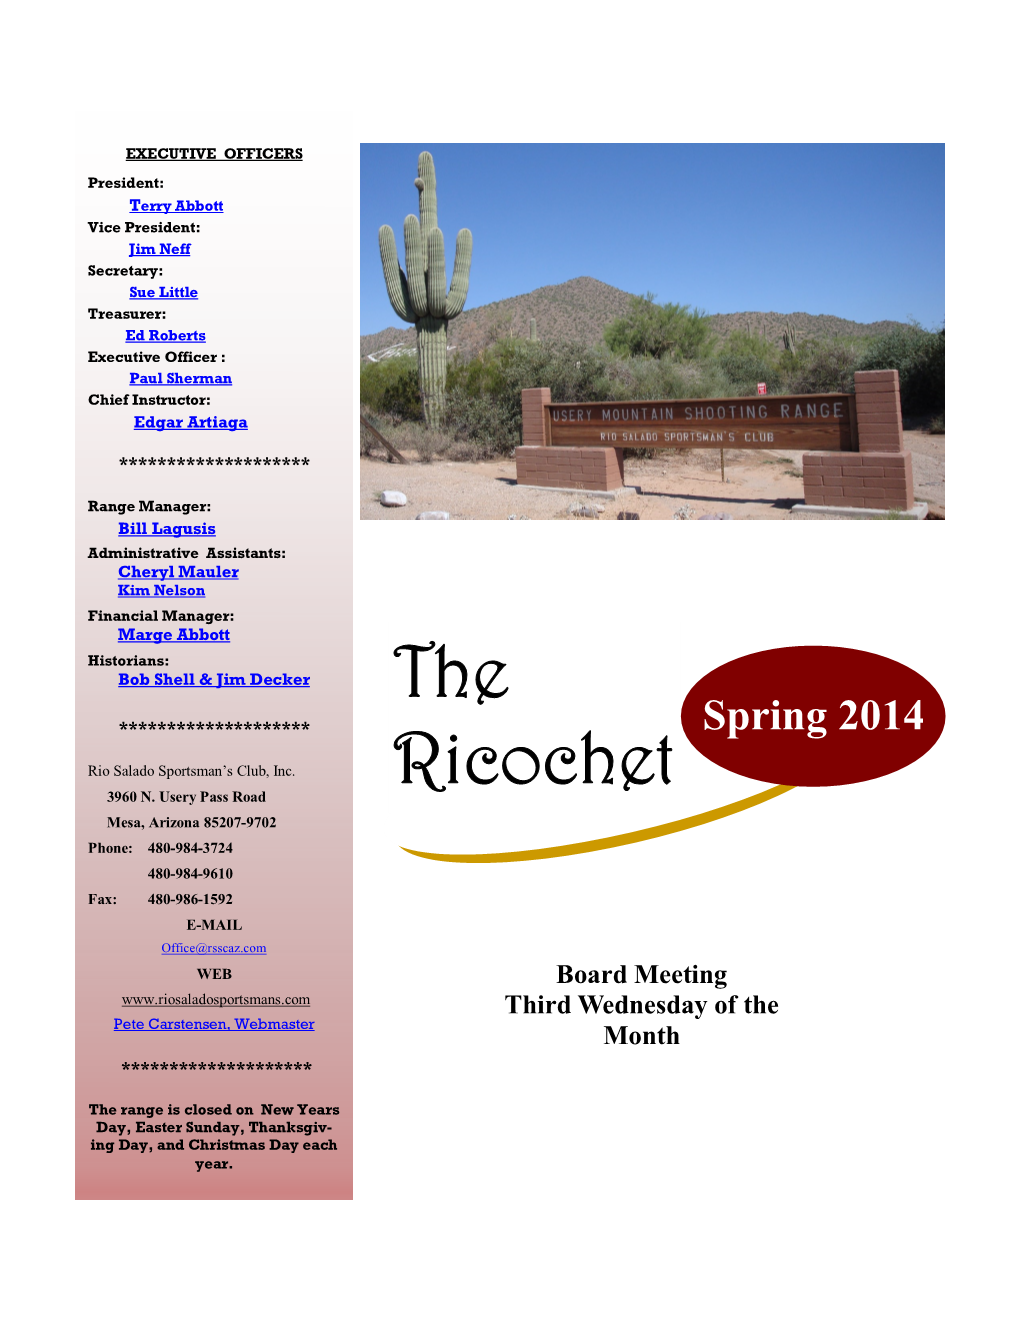 The Ricochet